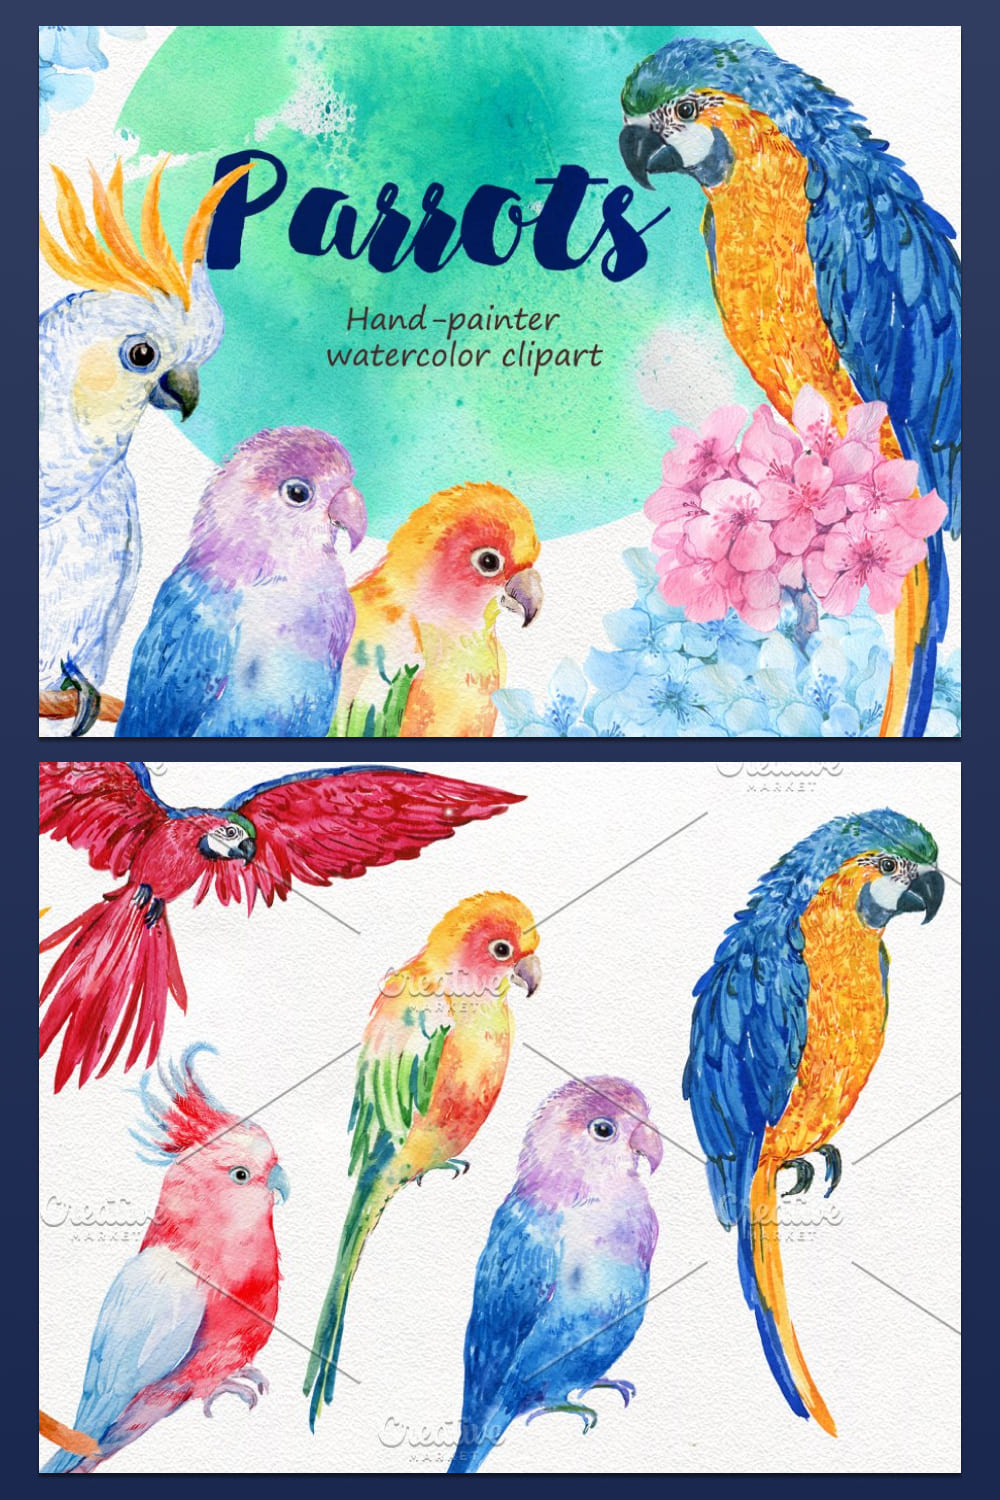 6 birds parrots watercolor - pinterest image preview.